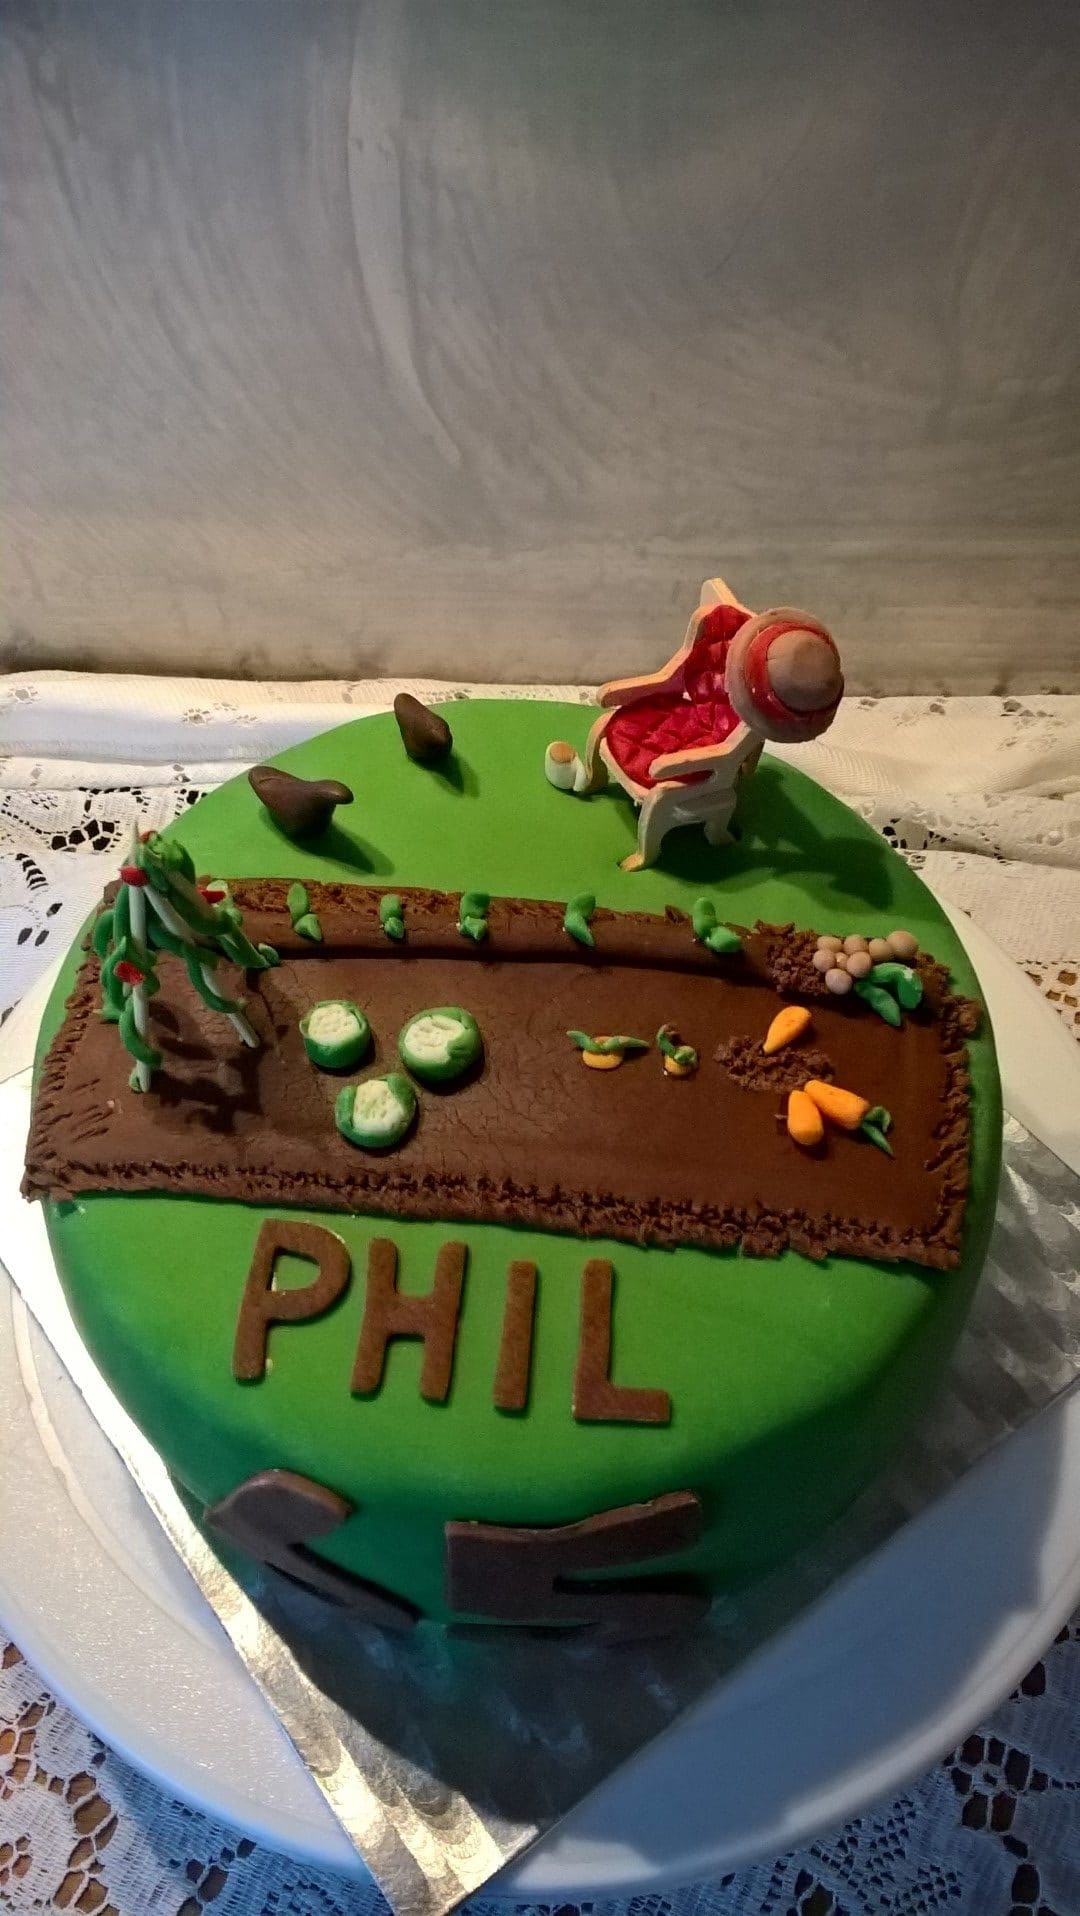 Phil Happy Birthday Cakes Pics Gallery